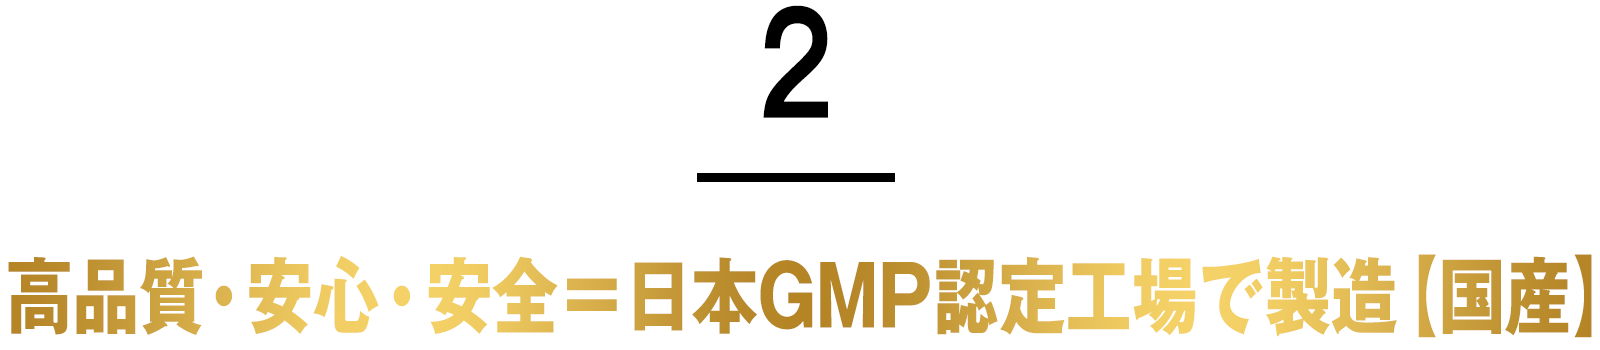 2.グルコサミン原料、日本トップシェアメーカーと共同開発